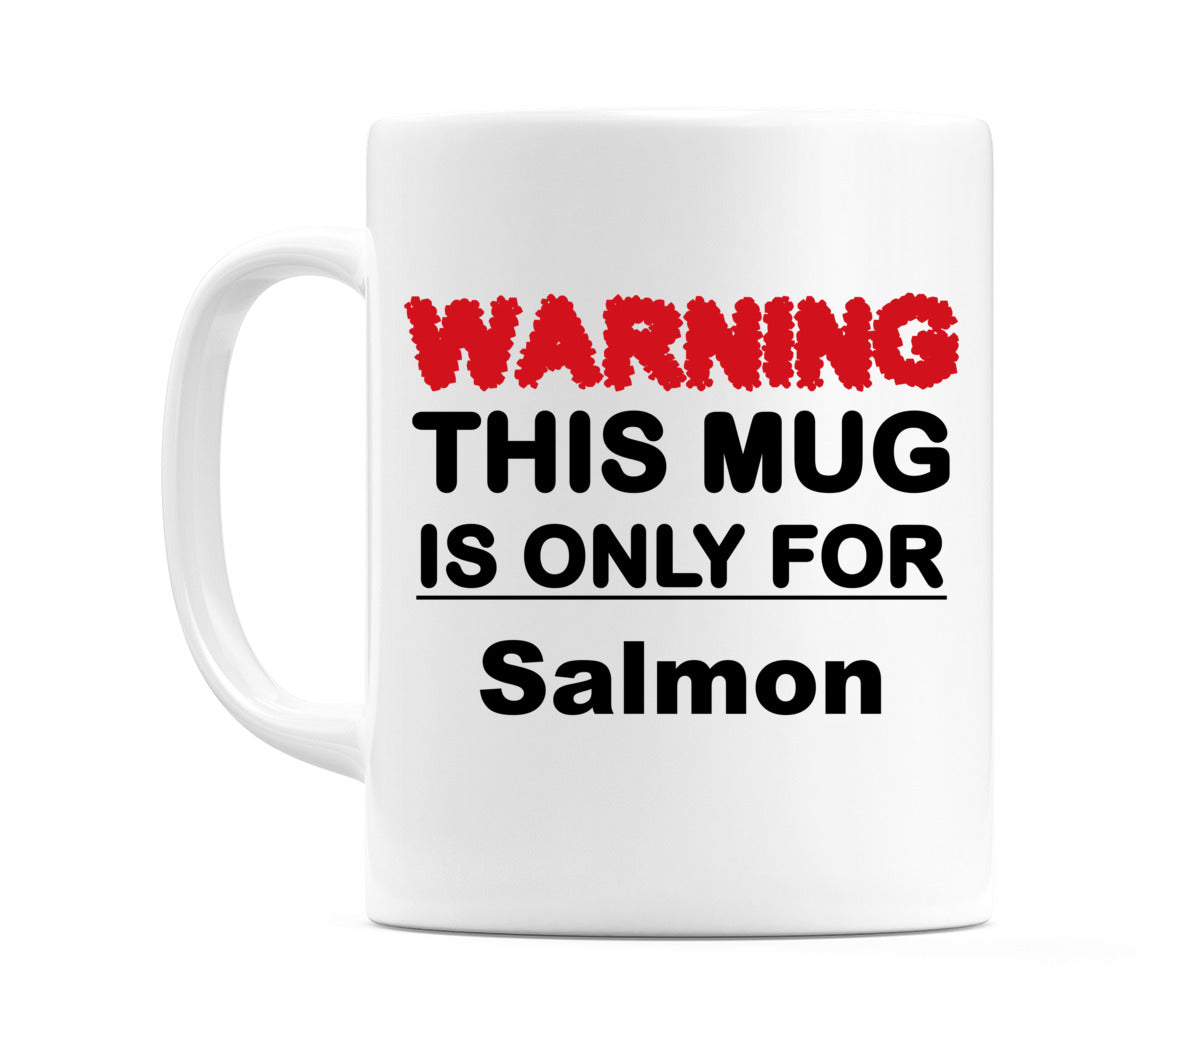 Warning This Mug is ONLY for Salmon Mug